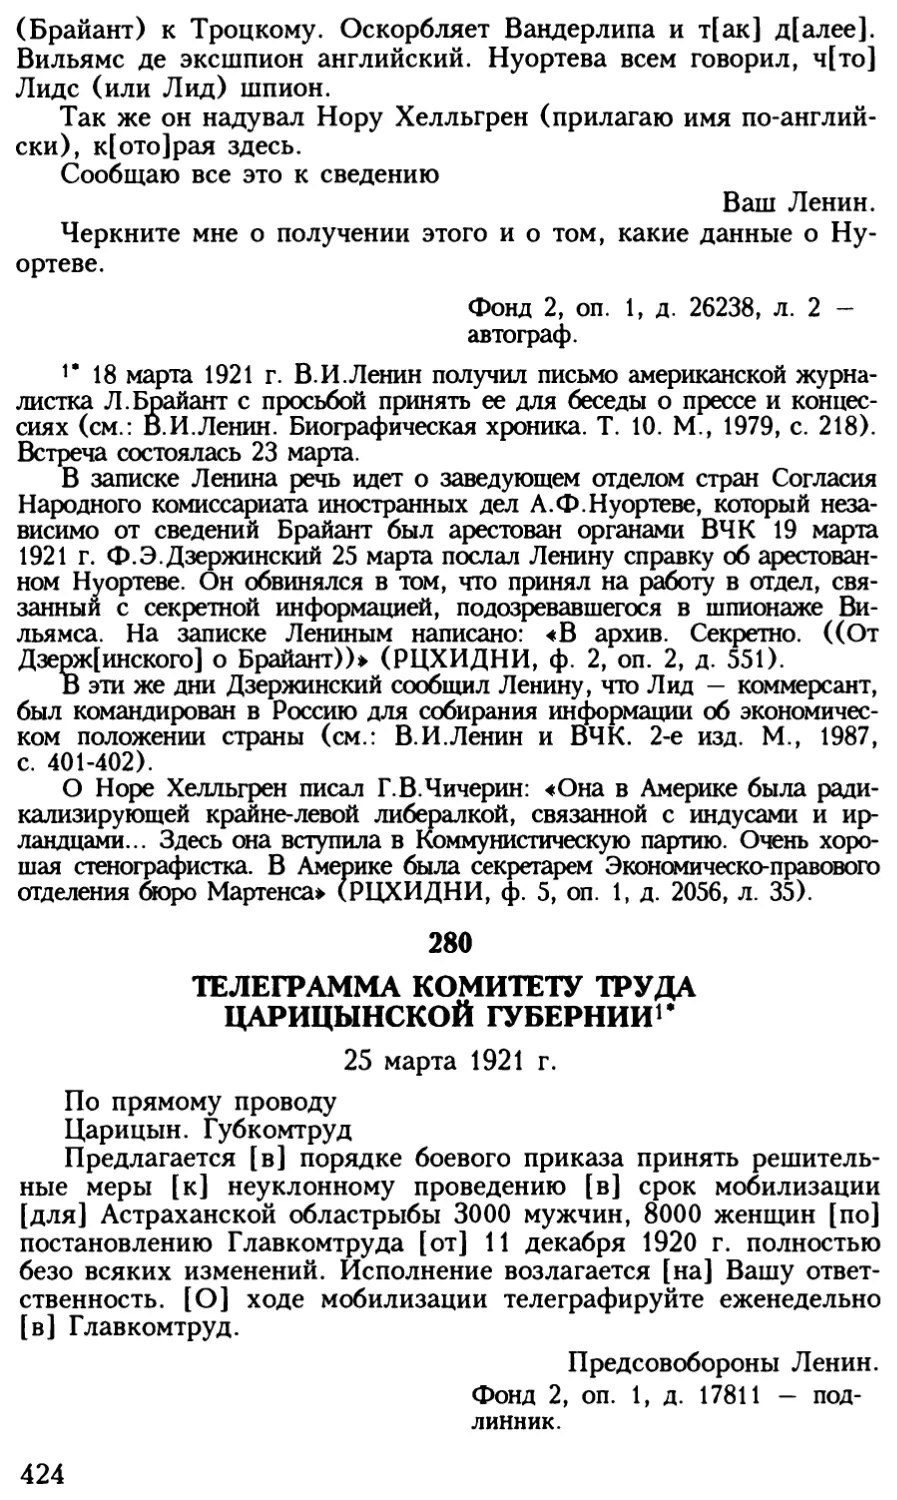 280. Телеграмма Комитету труда Царицынской губернии. 25 марта 1921 г